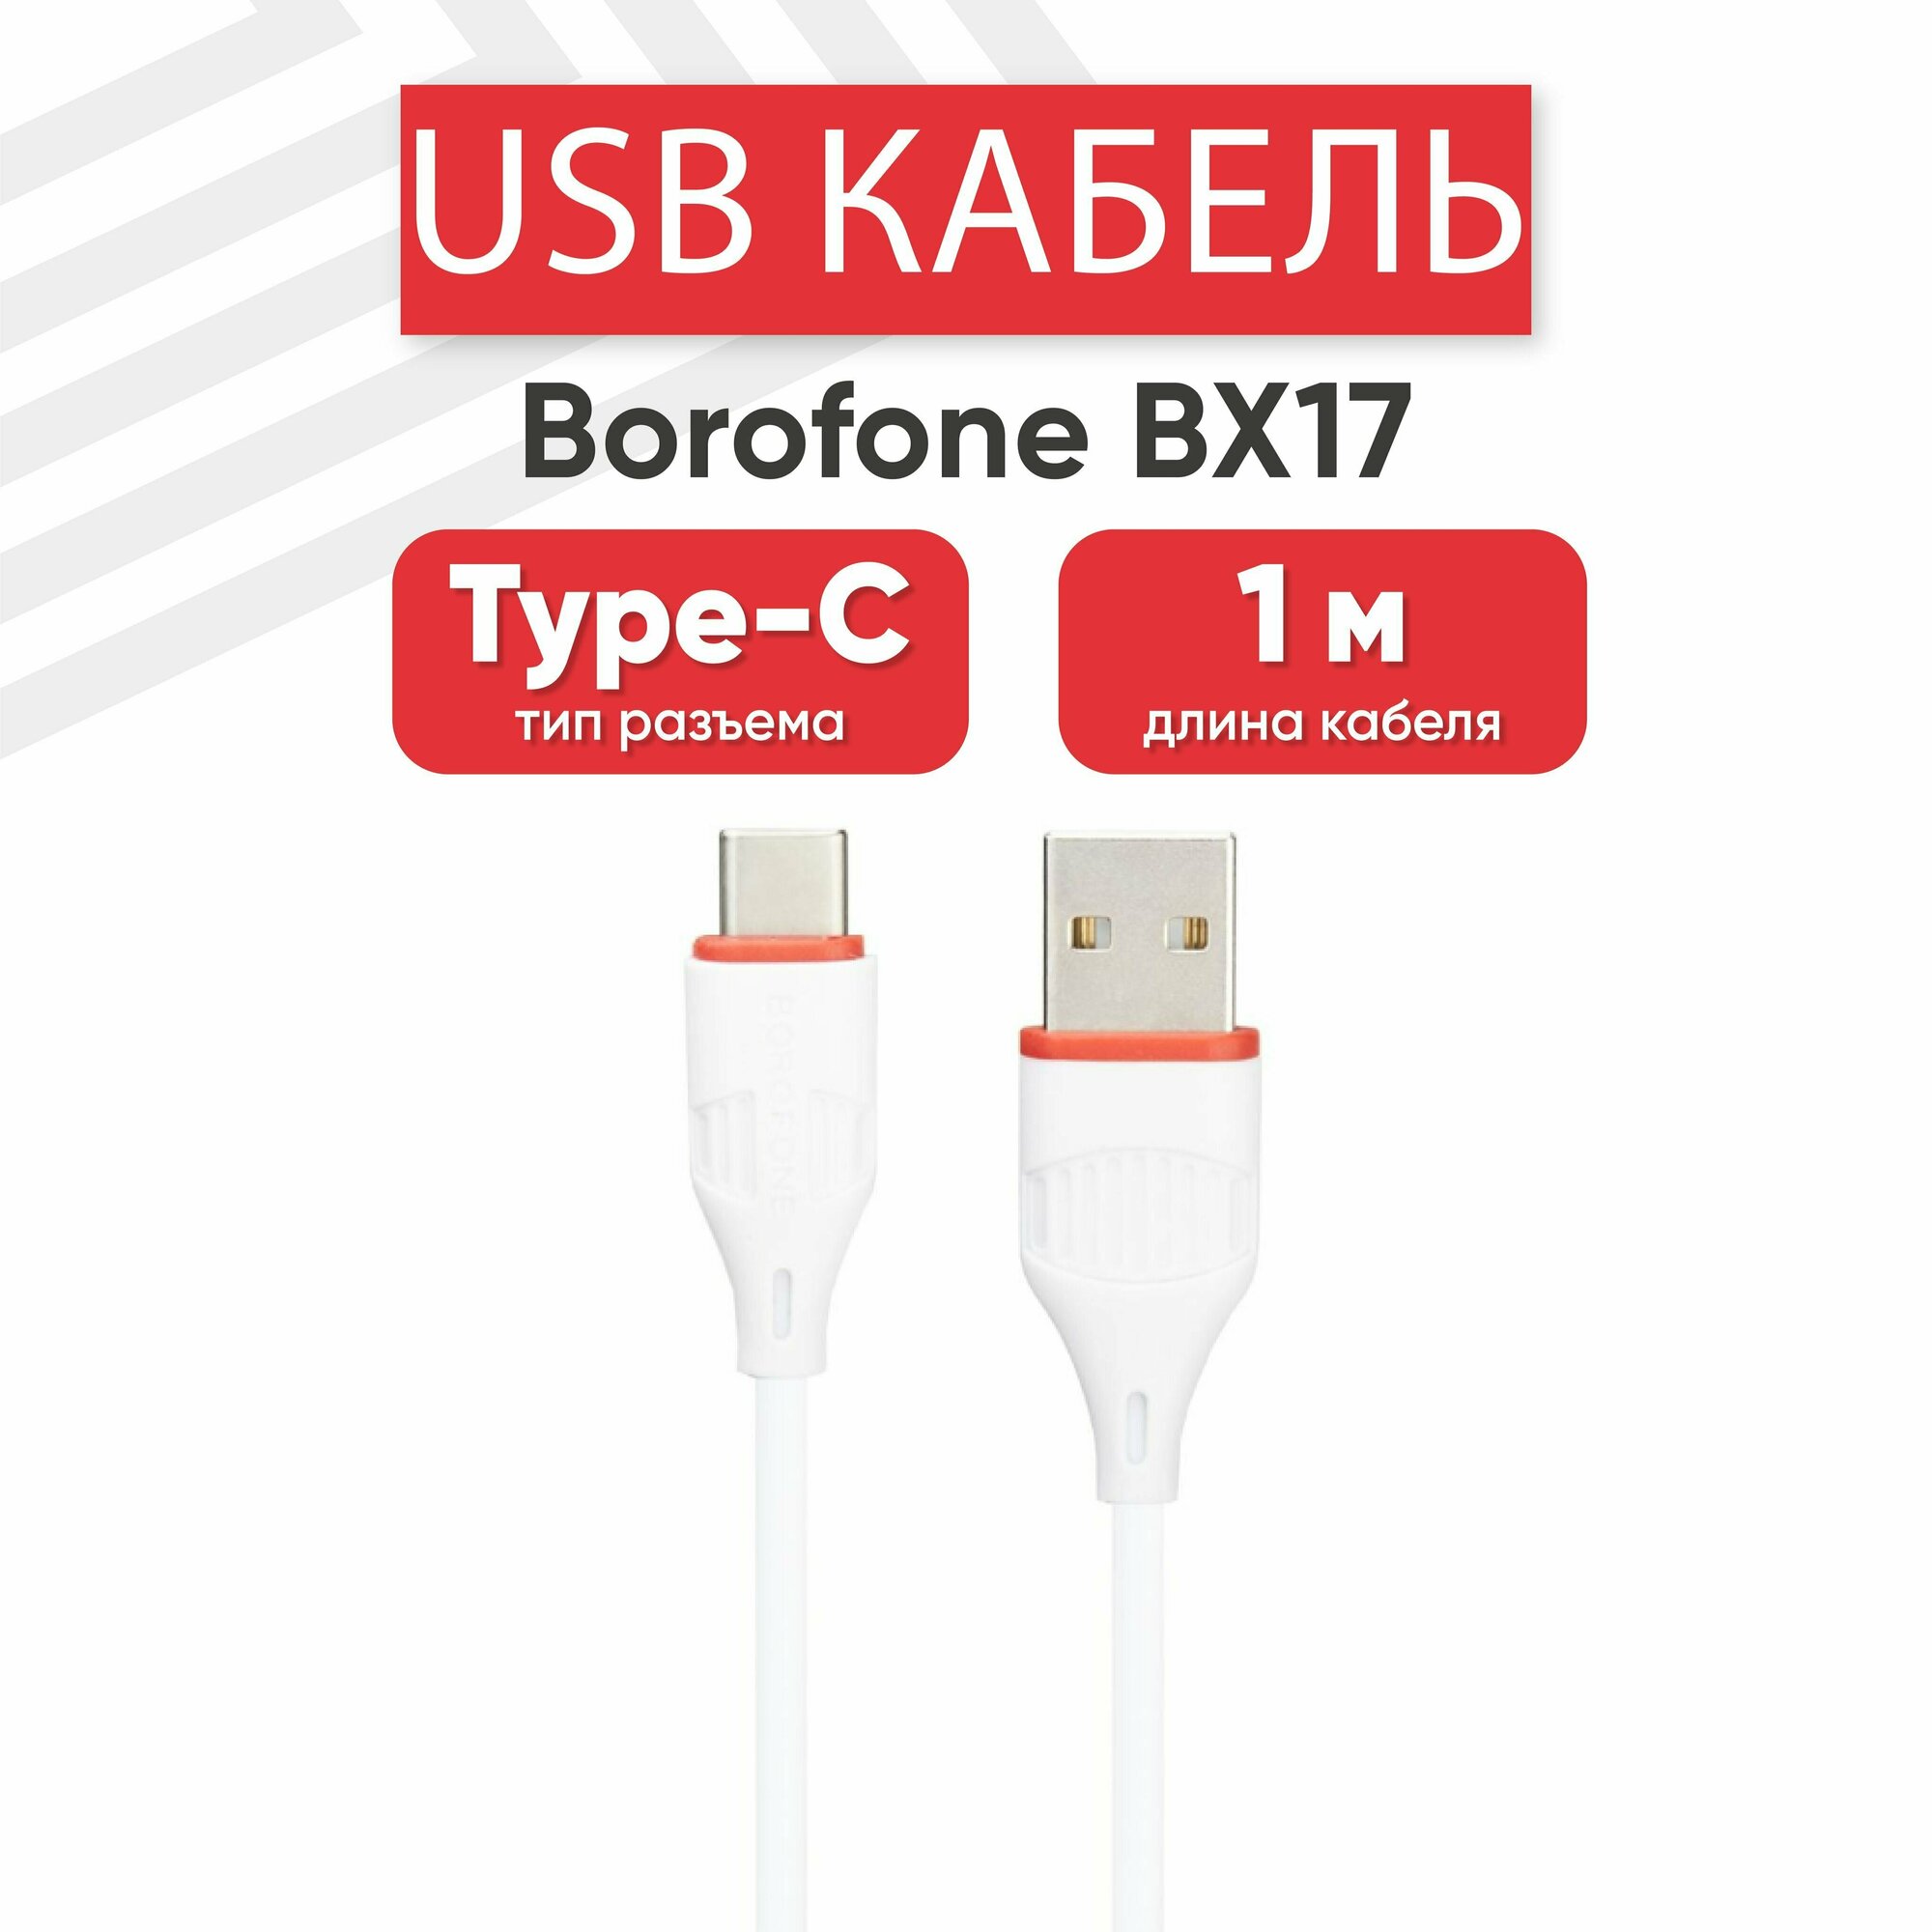 USB кабель Borofone BX17 для зарядки, передачи данных, Type-C, 2А, Fast Charging, 1 метр, PVC, белый